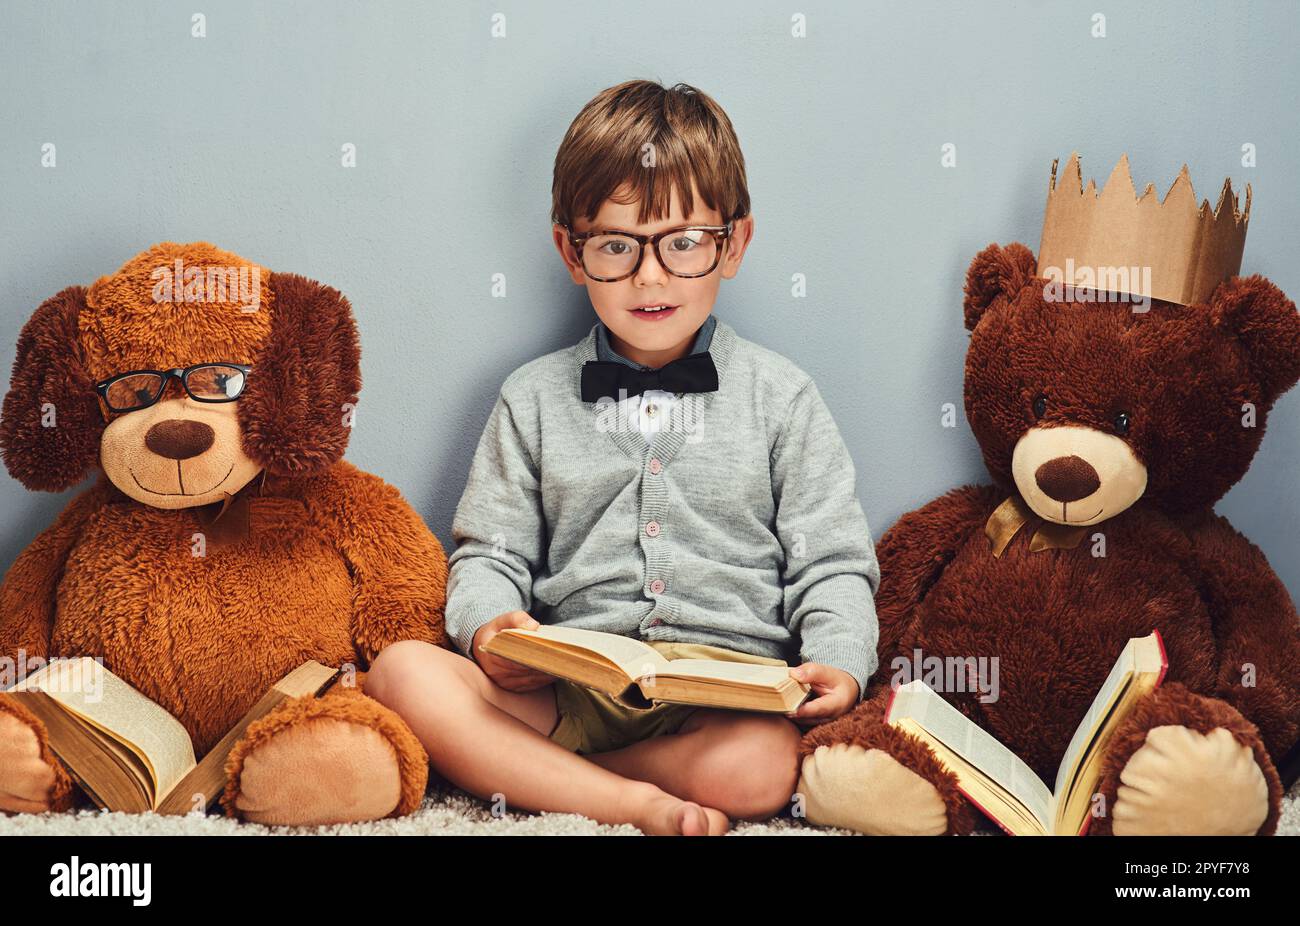 Tutti leggiamo insieme. Studio ritratto di un ragazzino intelligente che legge un libro accanto ai suoi orsacchiotti su uno sfondo grigio. Foto Stock